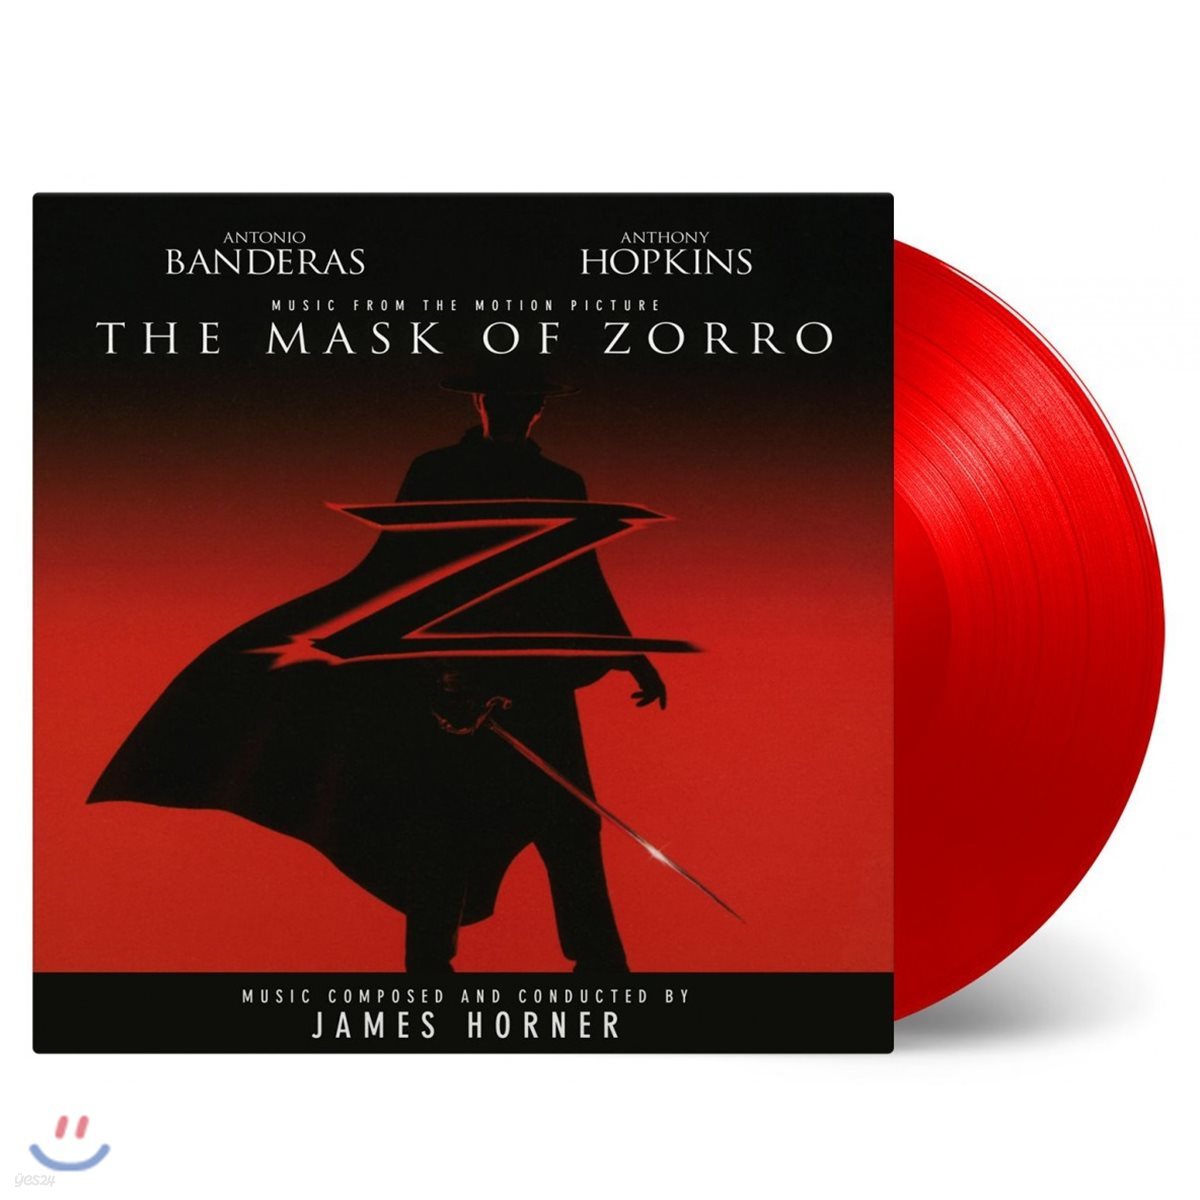 마스크 오브 조로 영화음악 (The Mask of Zorro OST by James Horner) [솔리드 레드 컬러 2LP]